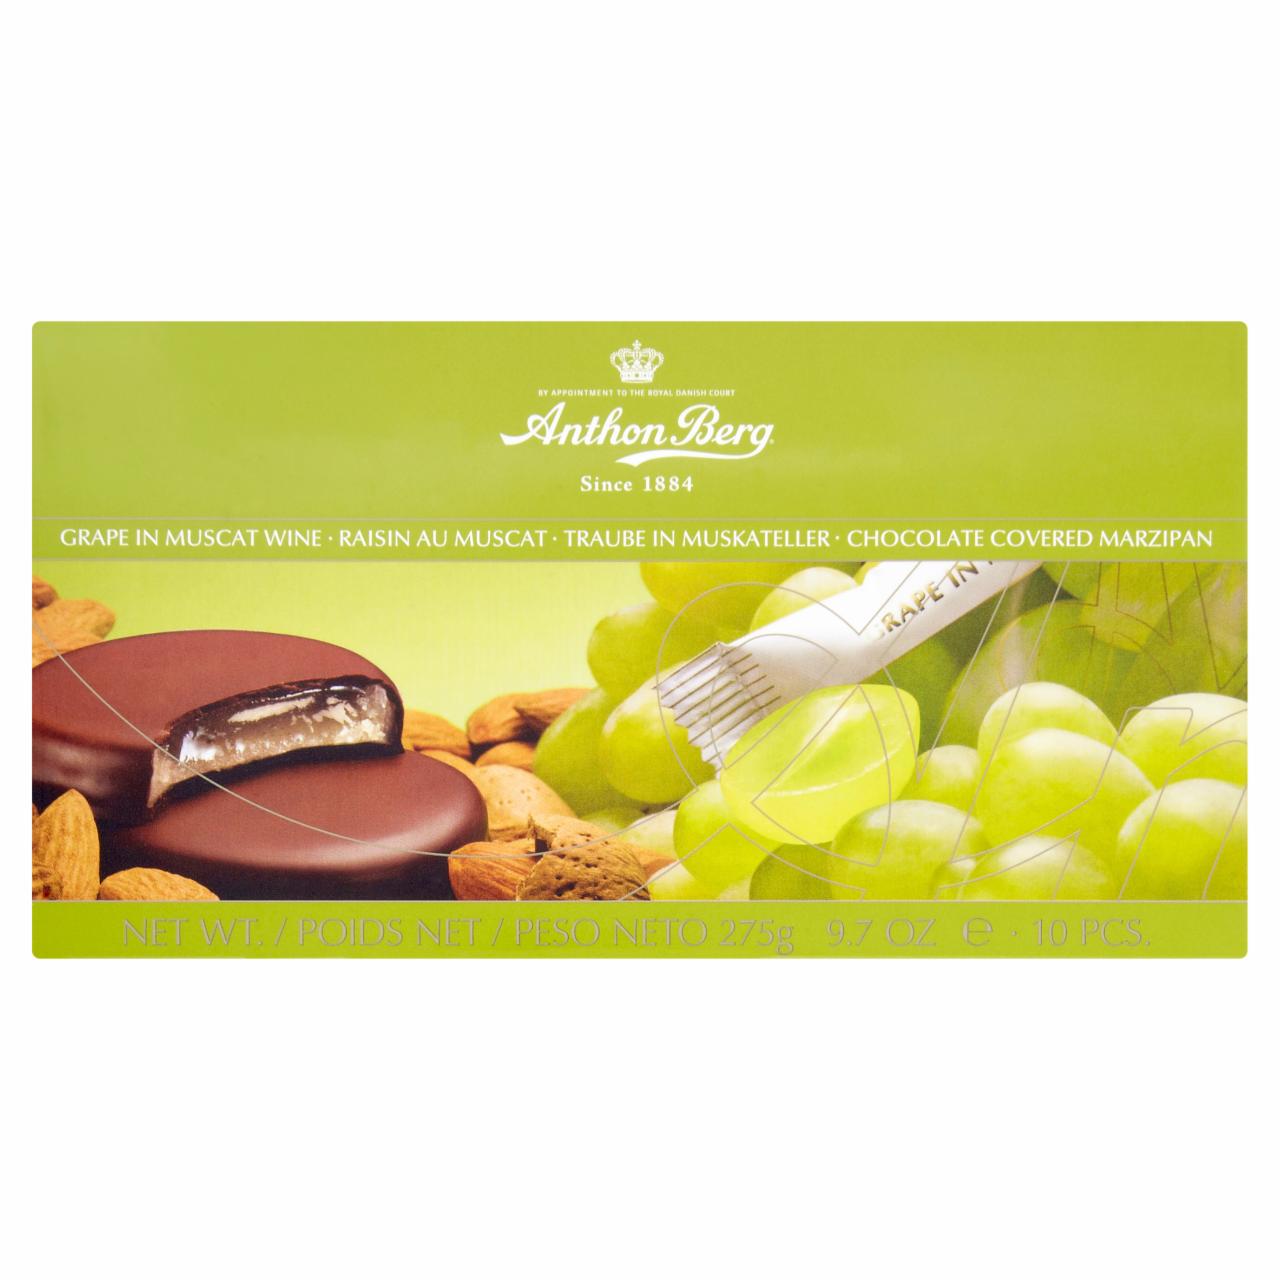 Képek - Anthon Berg csokoládé marcipánnal és muskotályborban lévő szőlővel töltve 275 g